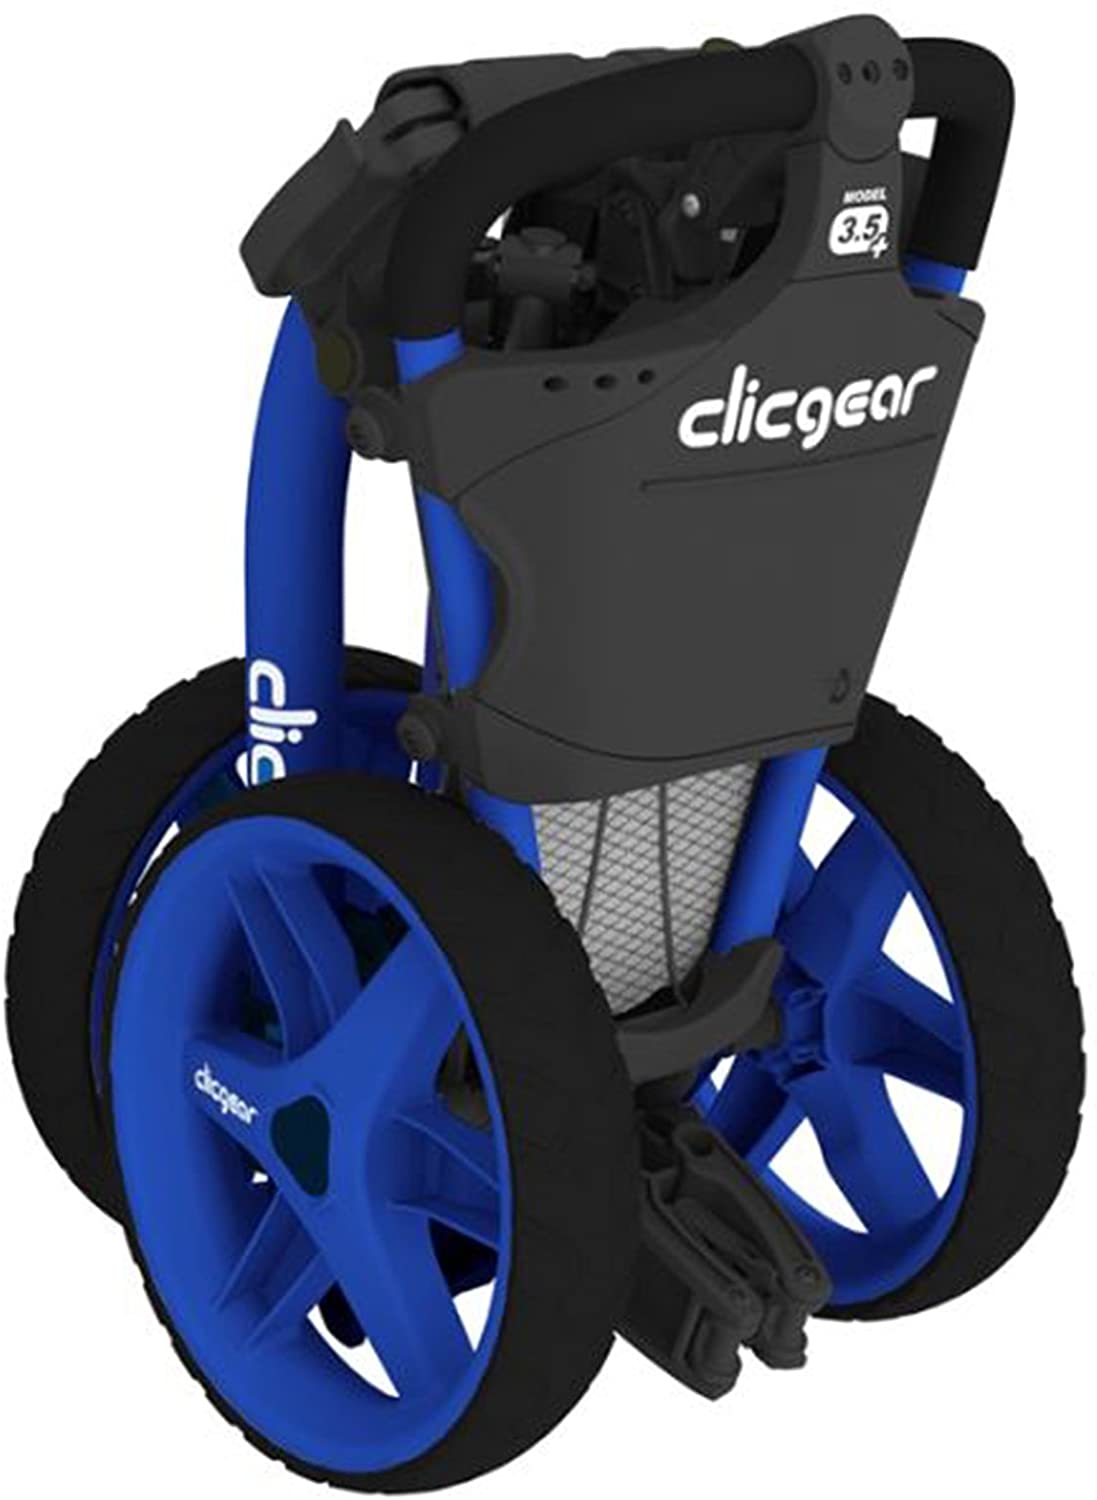 Clicgear Model 3.5+ Golf Push Cart Review